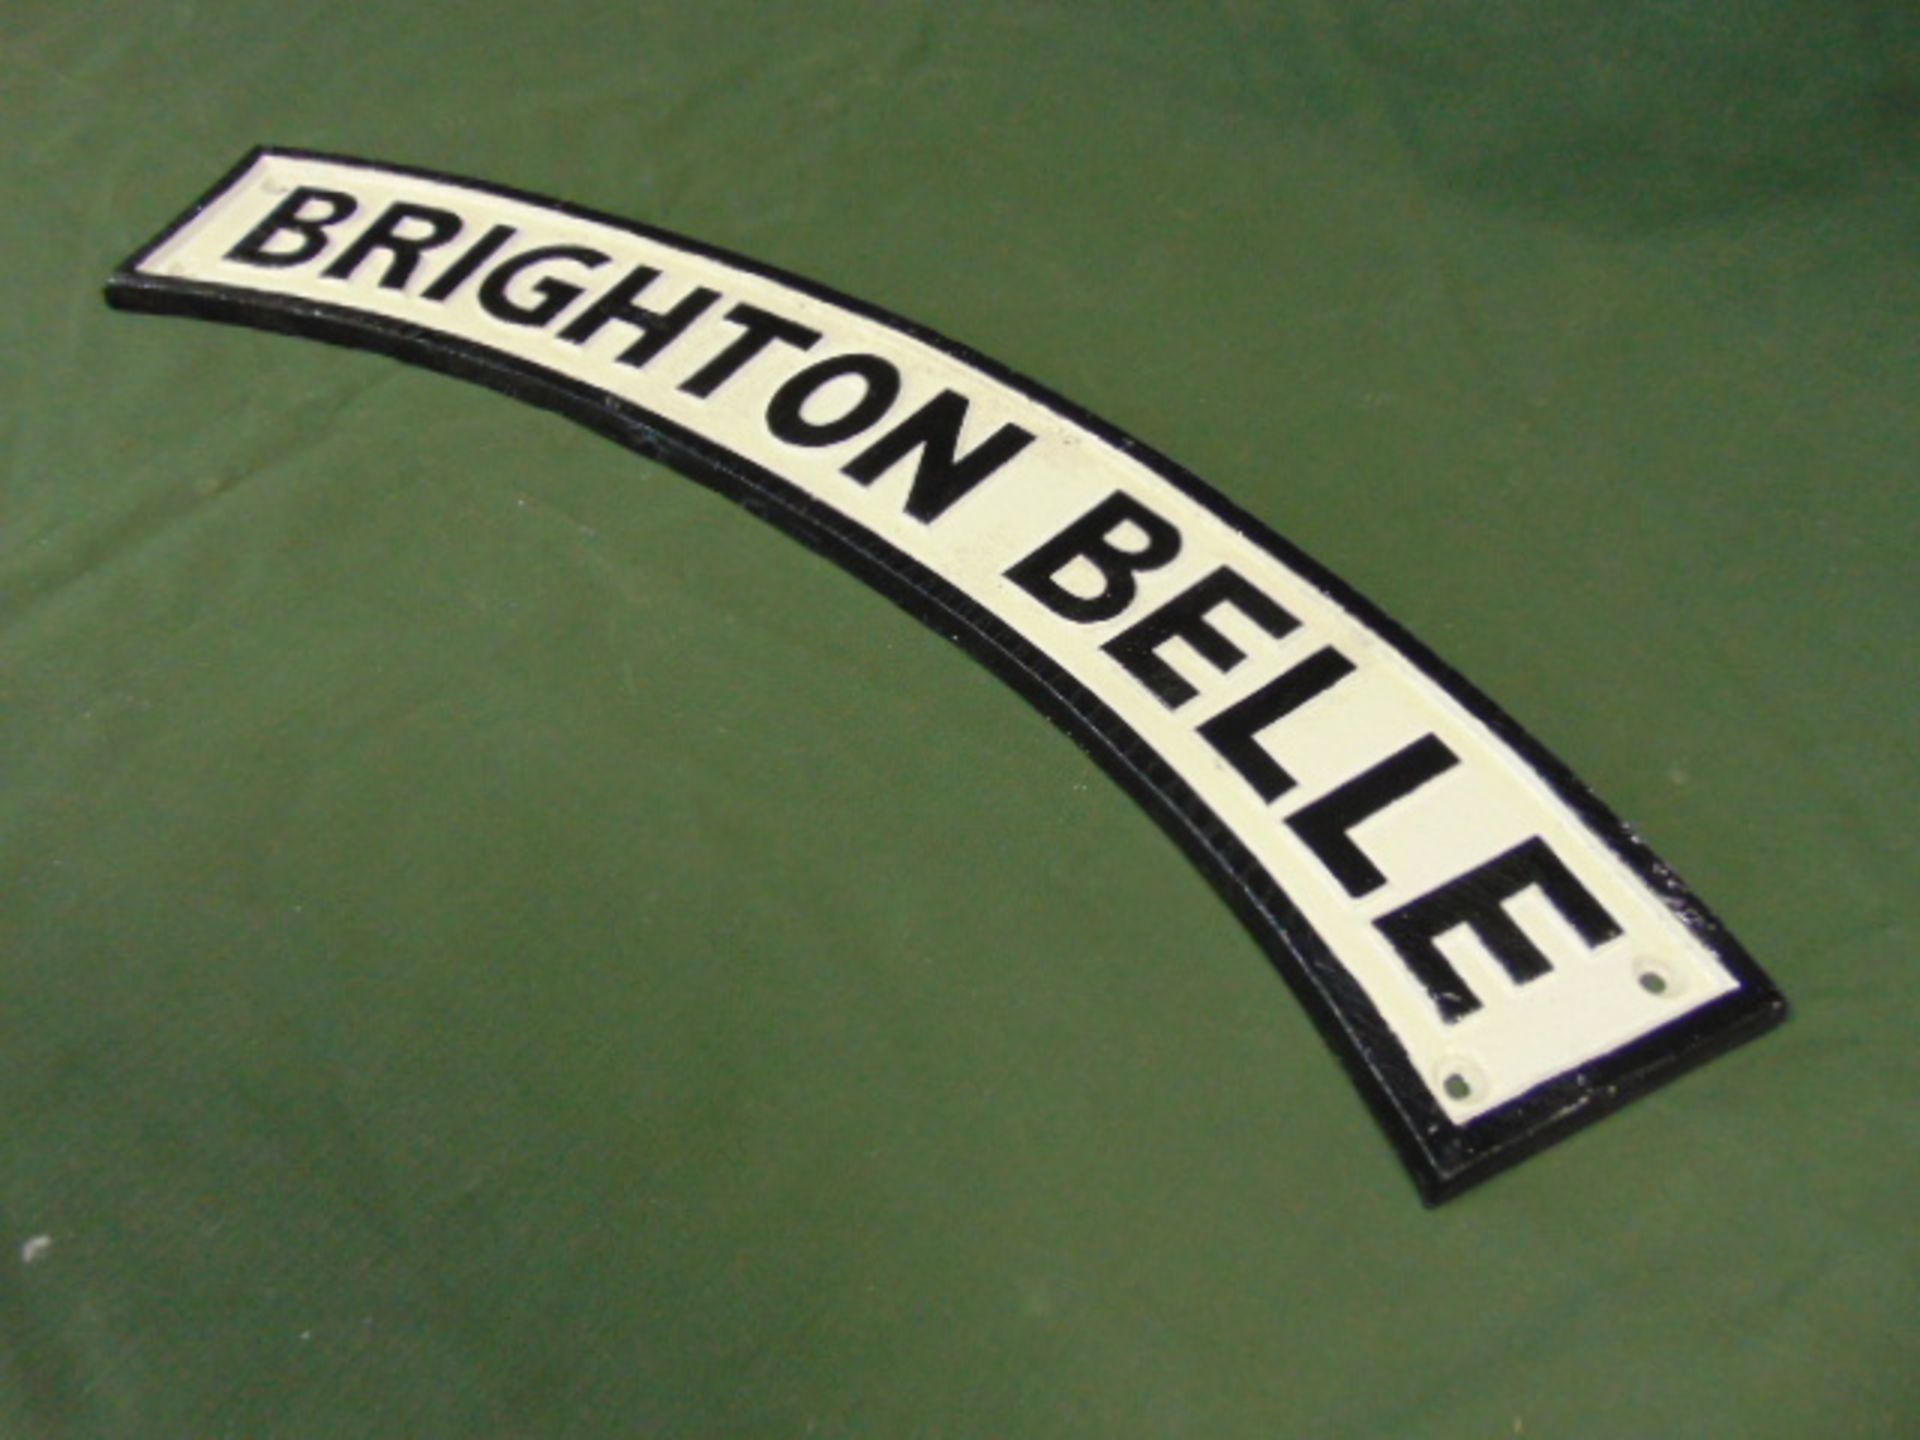 Cast Iron "Brighton Belle" Steam Train Plaque - Image 2 of 3